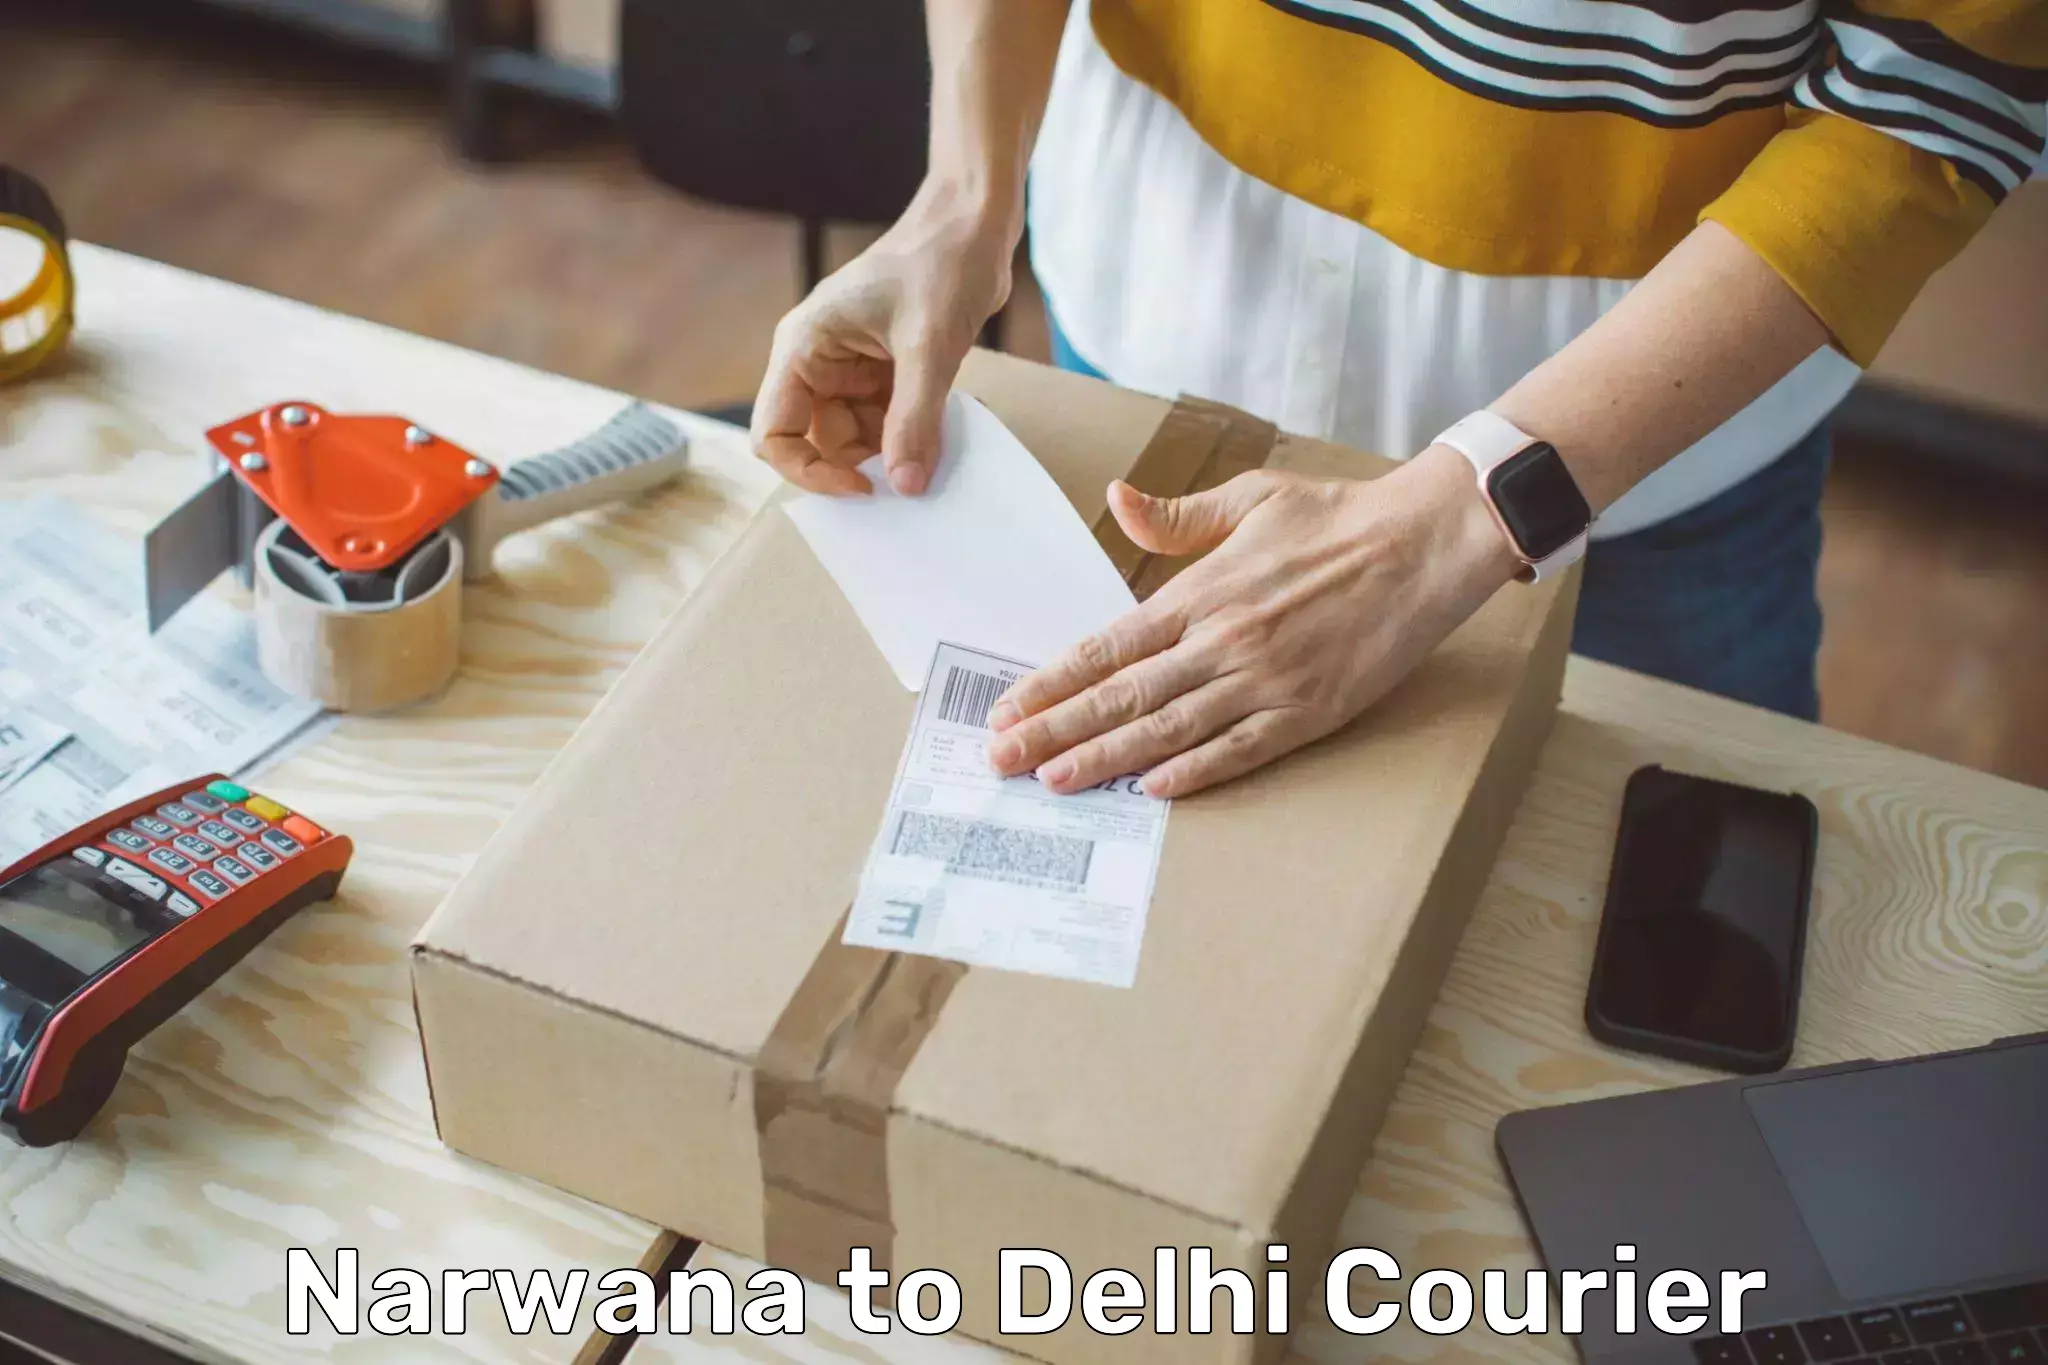 Efficient freight service Narwana to Delhi